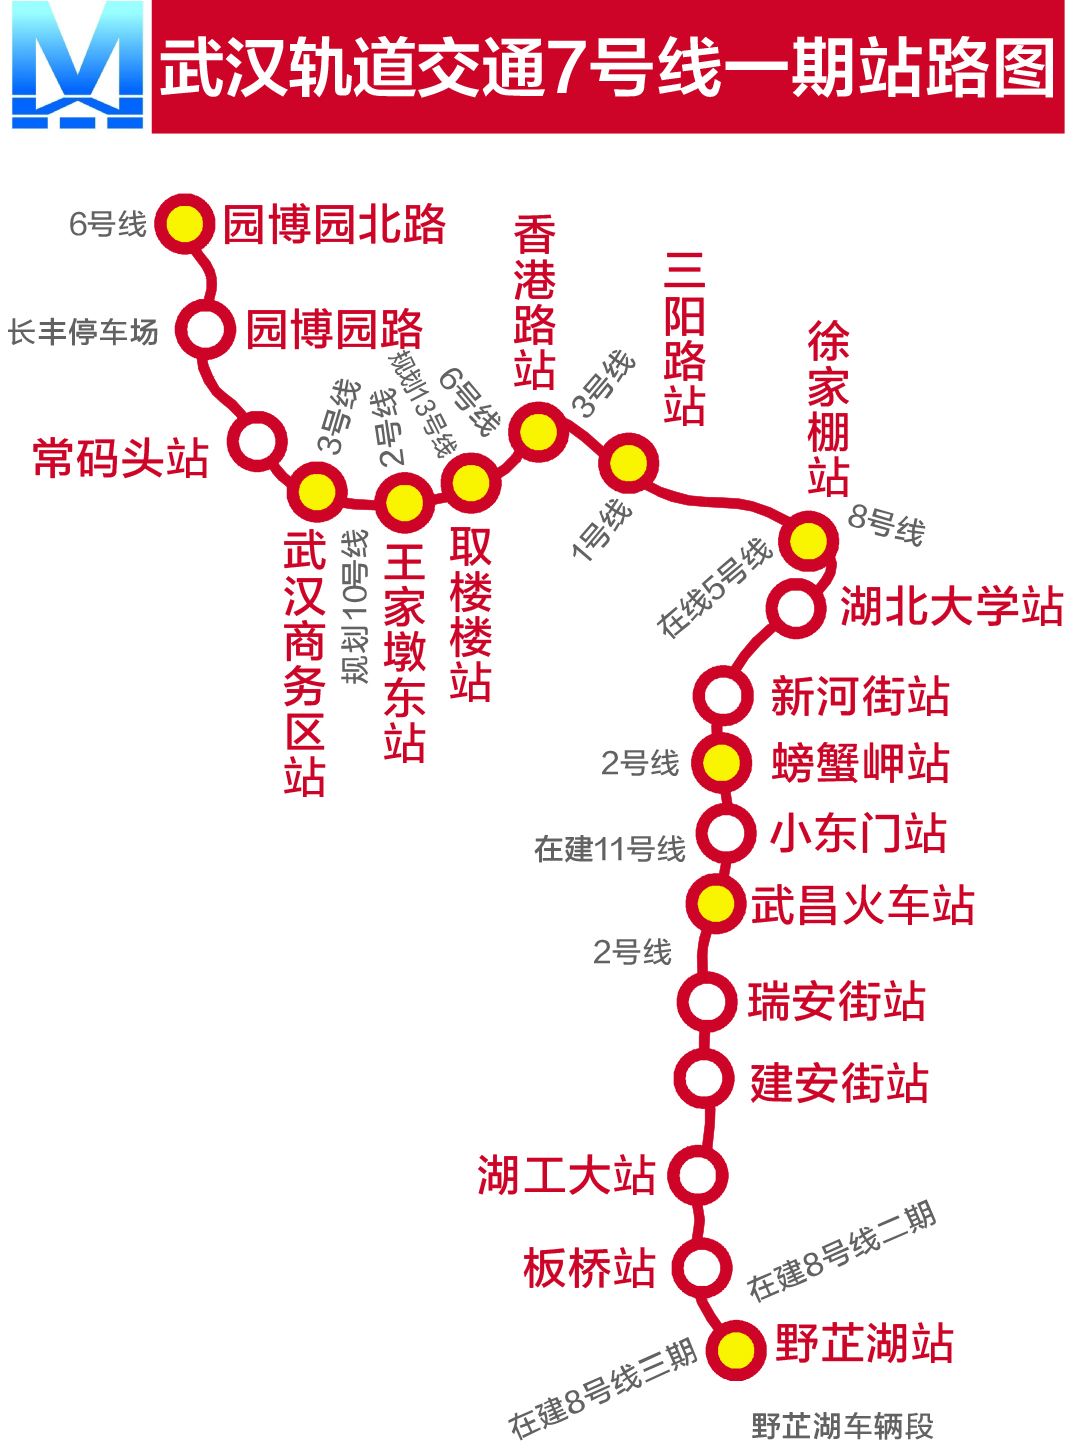 武汉今年最受期待的地铁,今天终于亮相!美爆了.